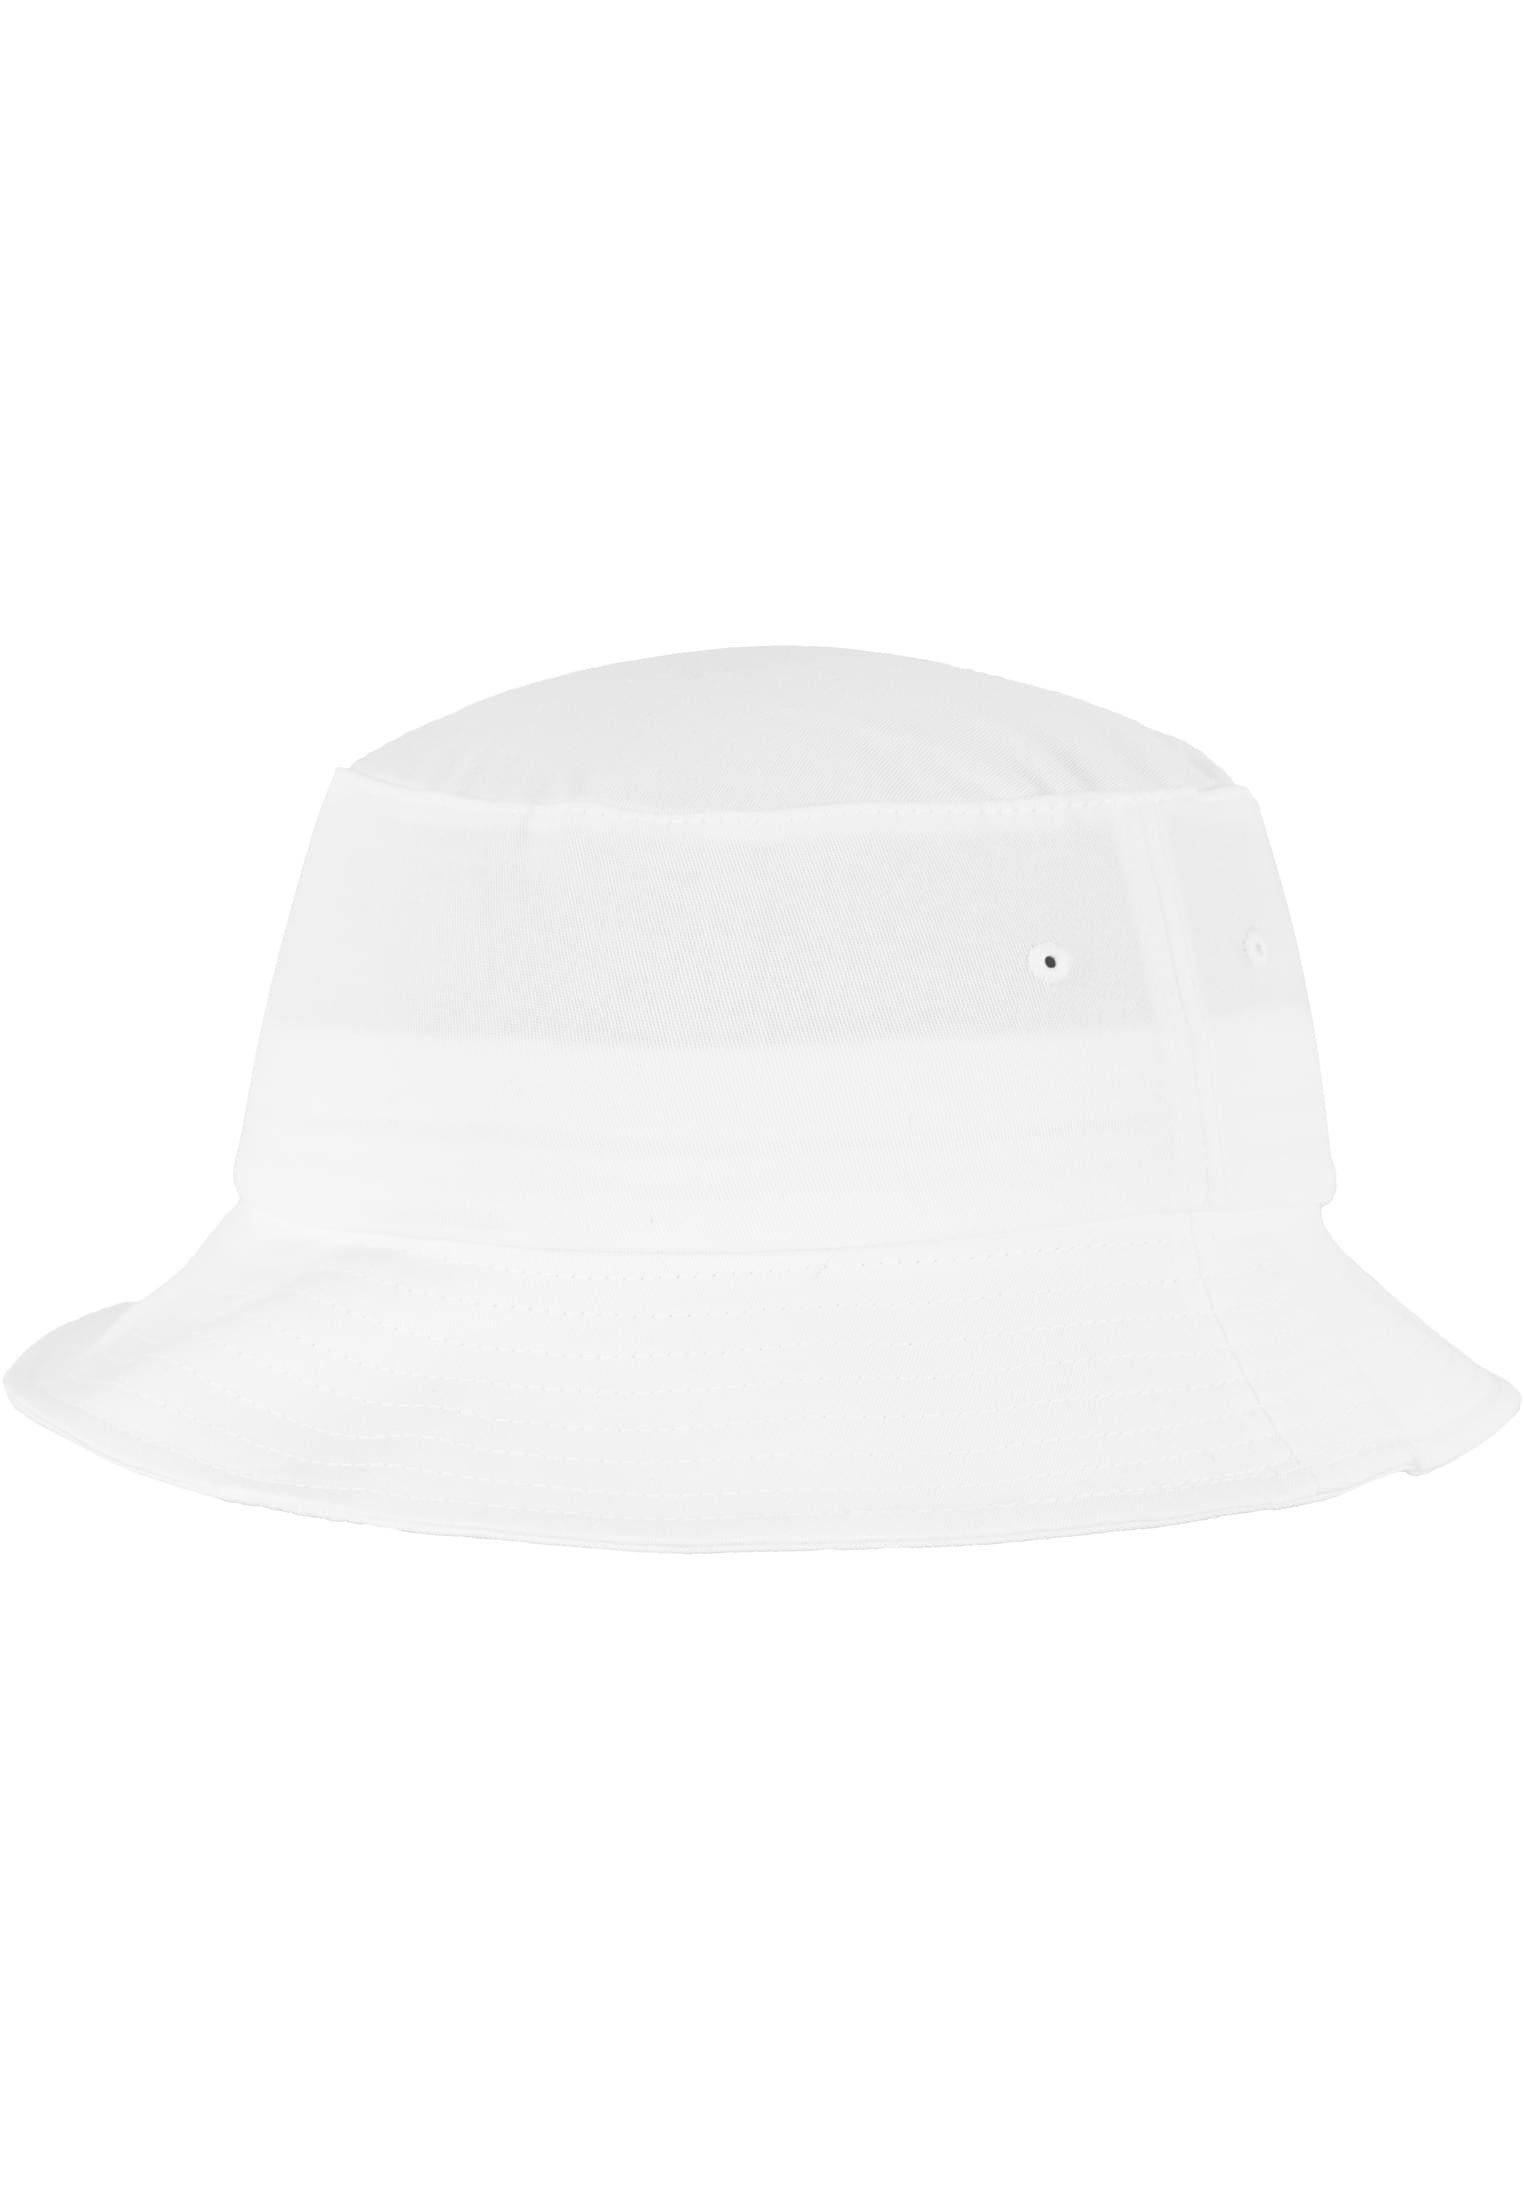 Accessoires Bucket Cotton Twill white Flex Cap Flexfit Flexfit Hat